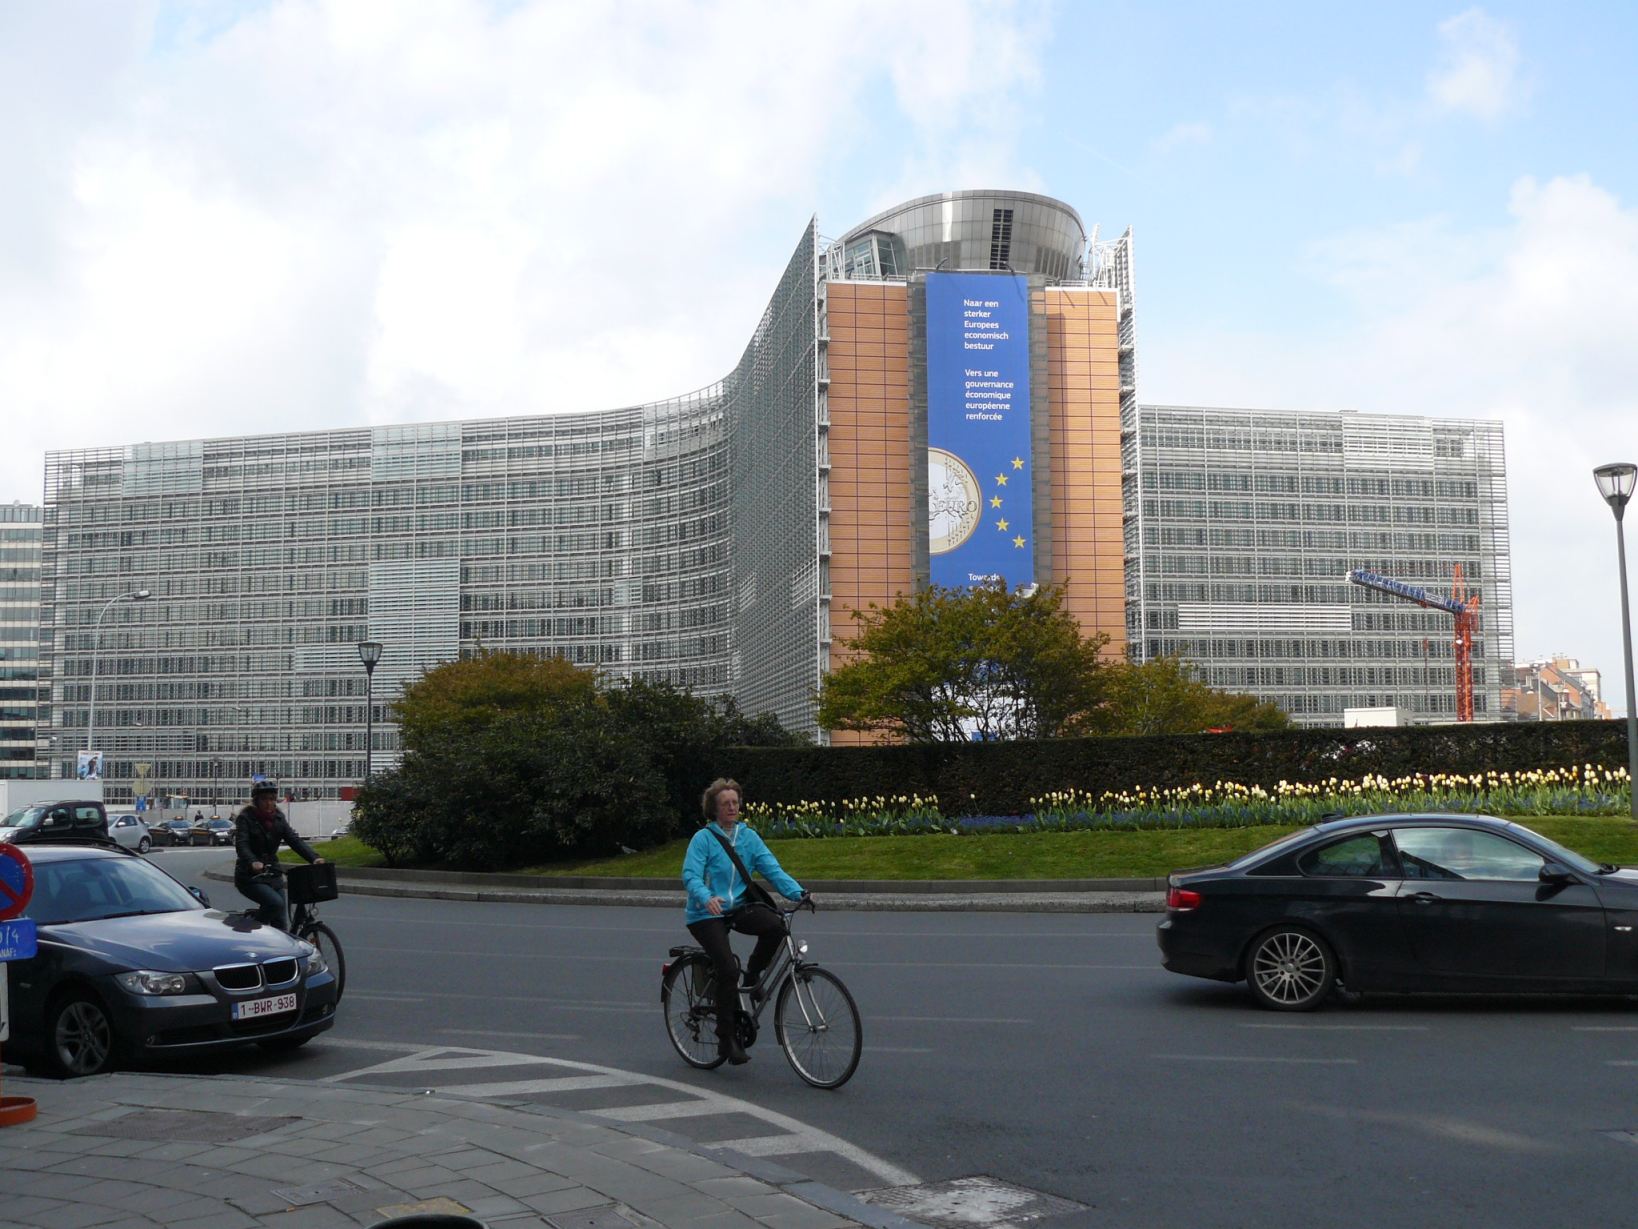 Az Európai Bizottság épülete: kicsit sok az útfelbontás körülötte, node mekkorák a változások az európai útvonalakon?